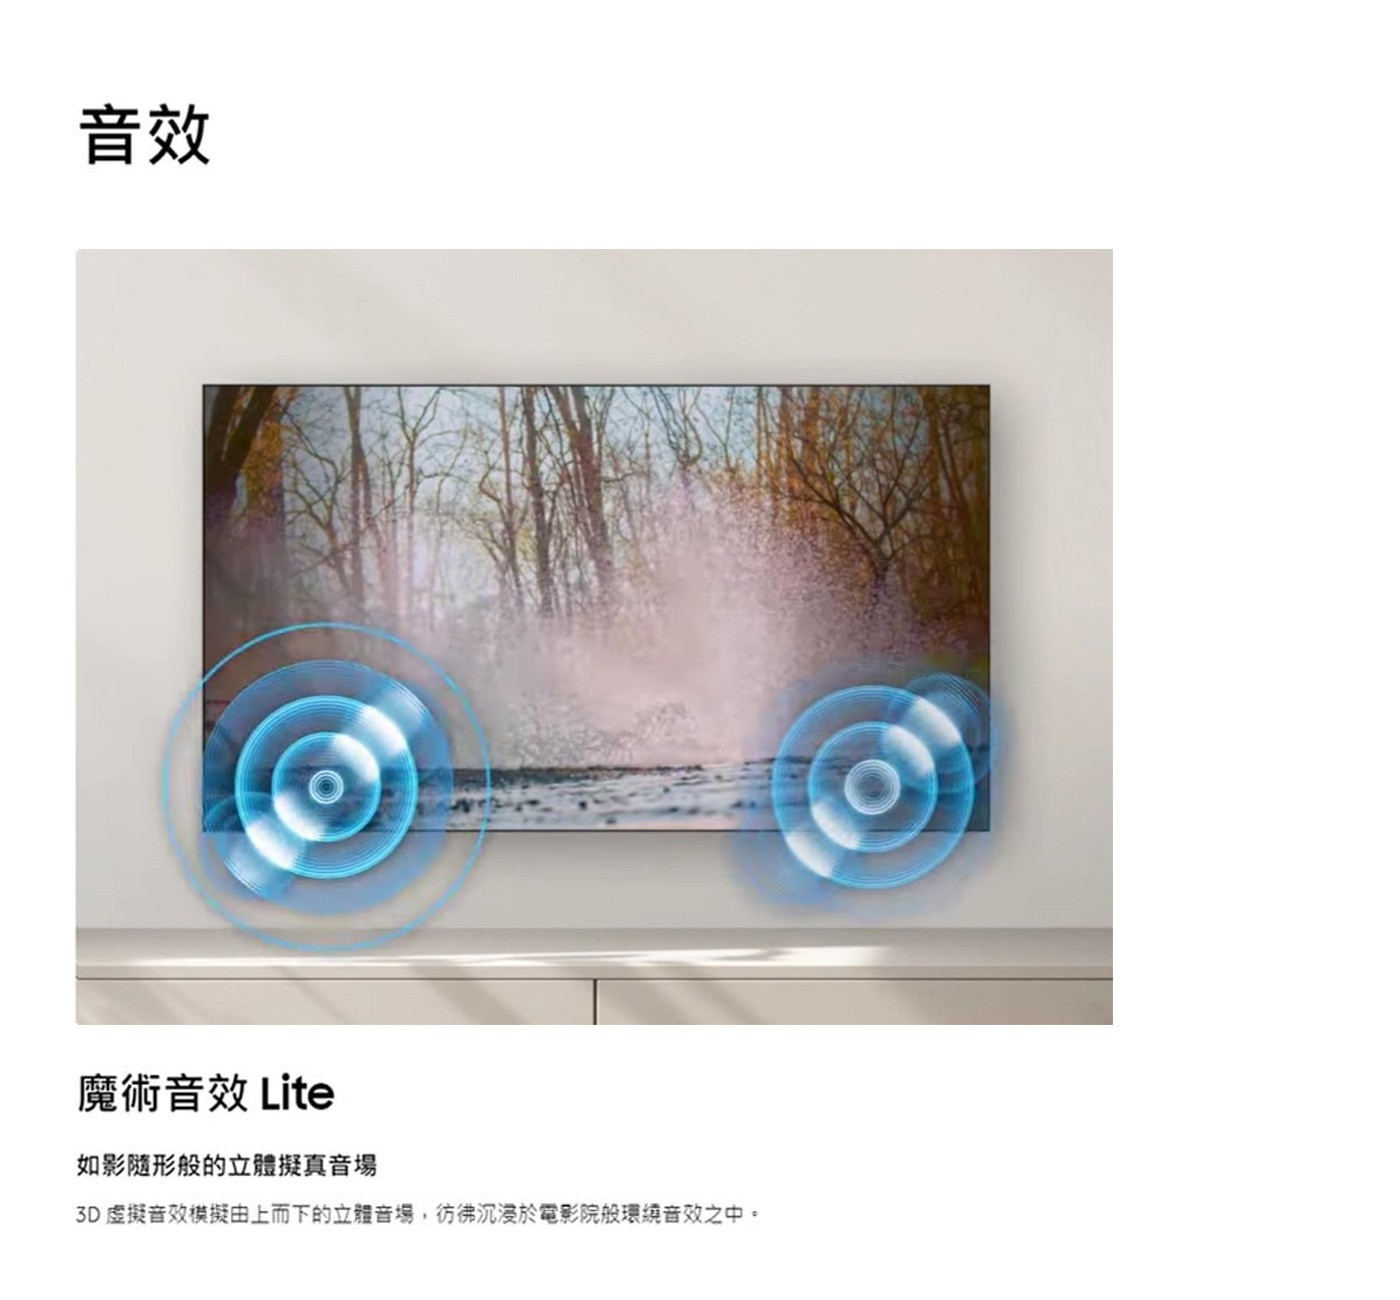 Samsung 55吋 4K UHD 電視 UA55CU7700XXZW魔術音效Lite